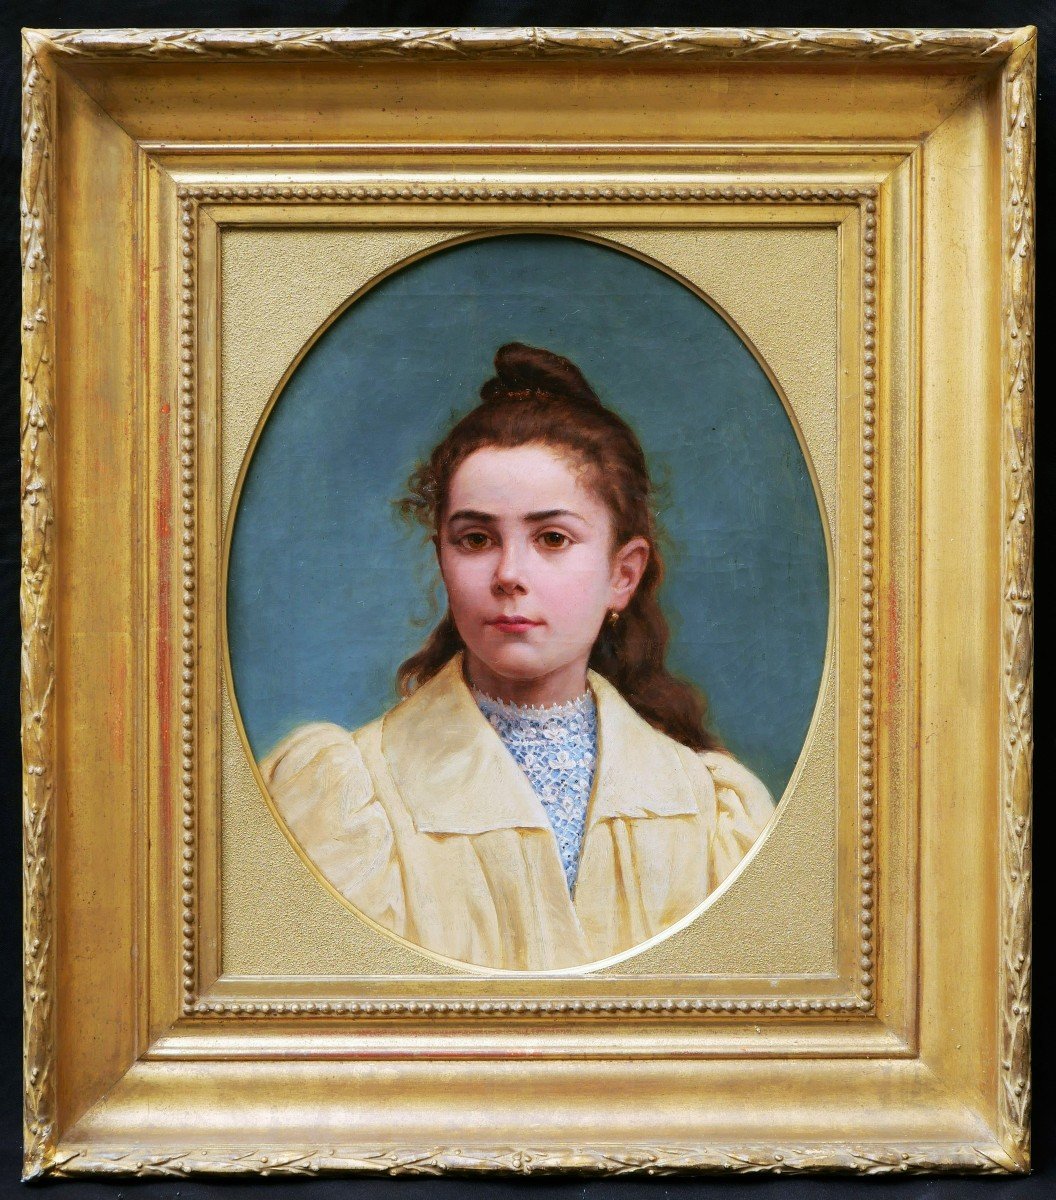 École FRANÇAISE circa 1880, Portrait de petite fille brune aux yeux noisette